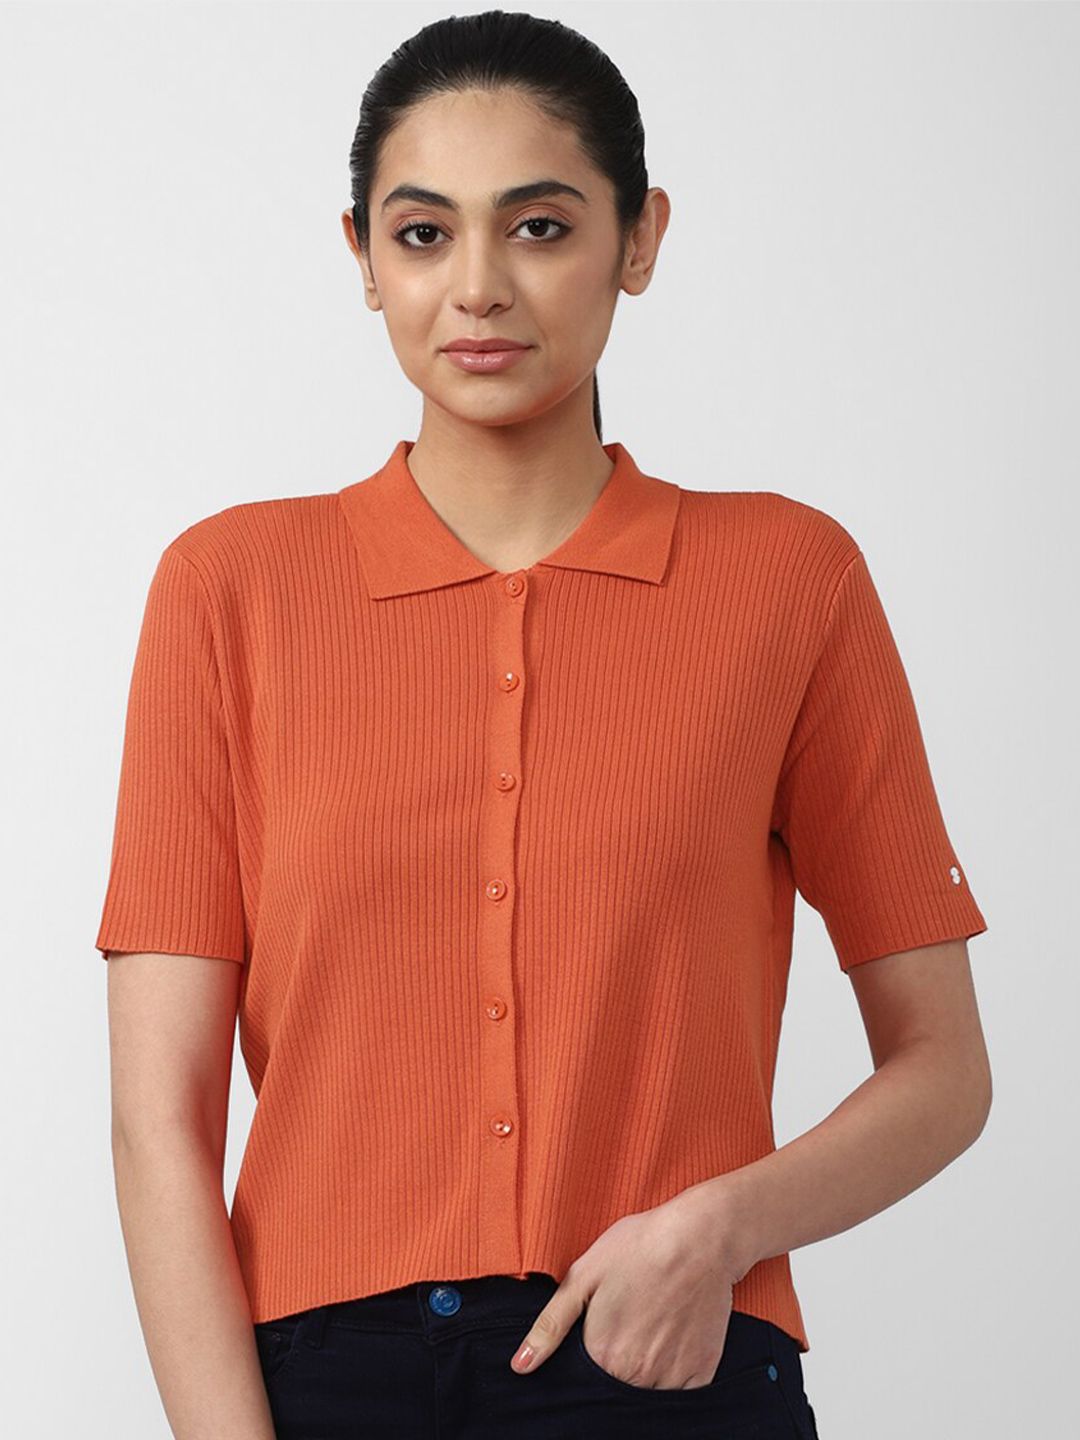 Van Heusen Women Orange Shirt Style Top Price in India